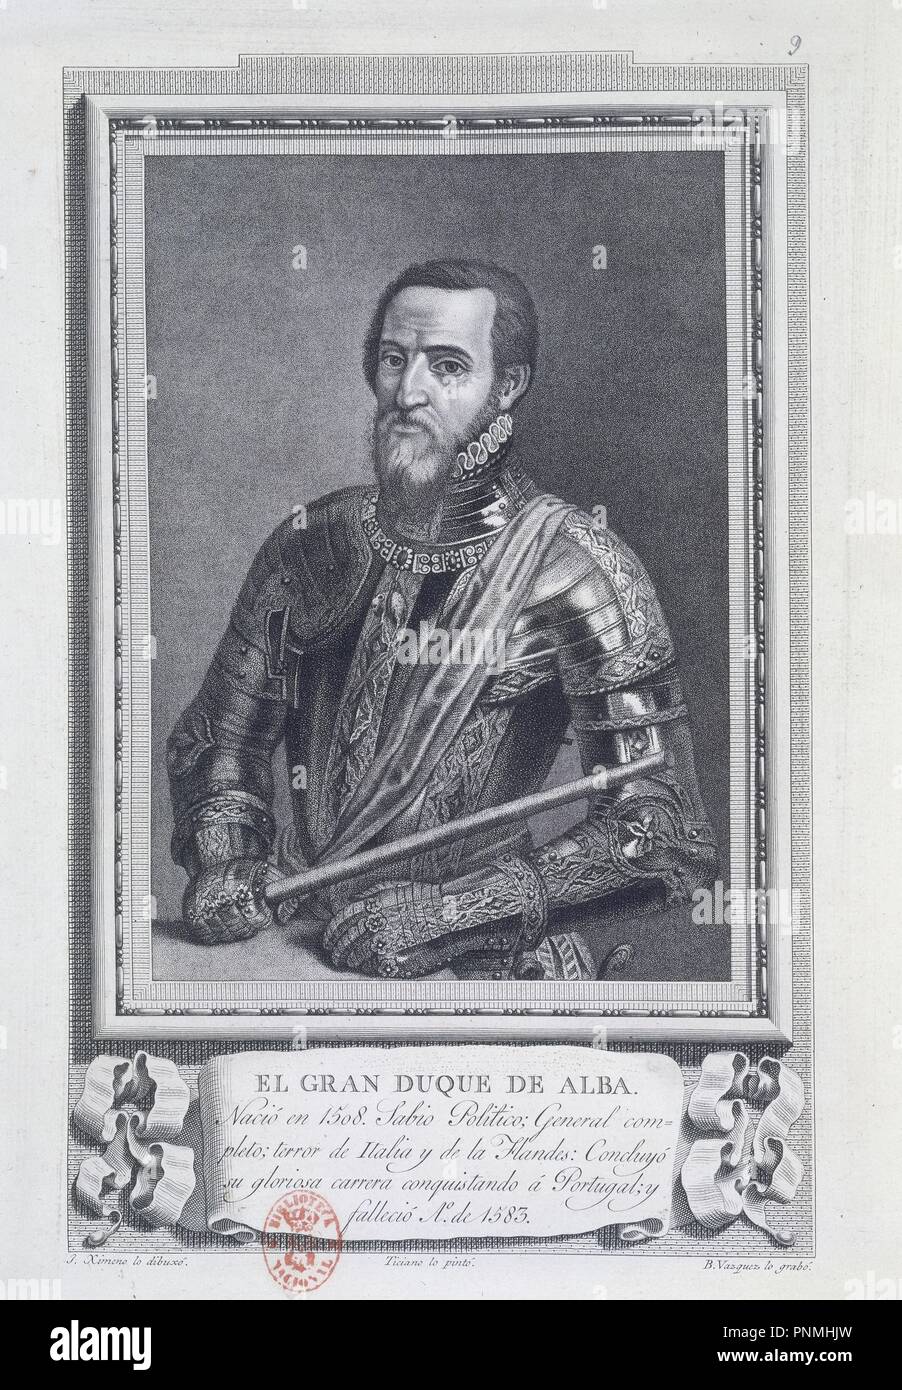 Gran duque de alba -Fotos und -Bildmaterial in hoher Auflösung – Alamy